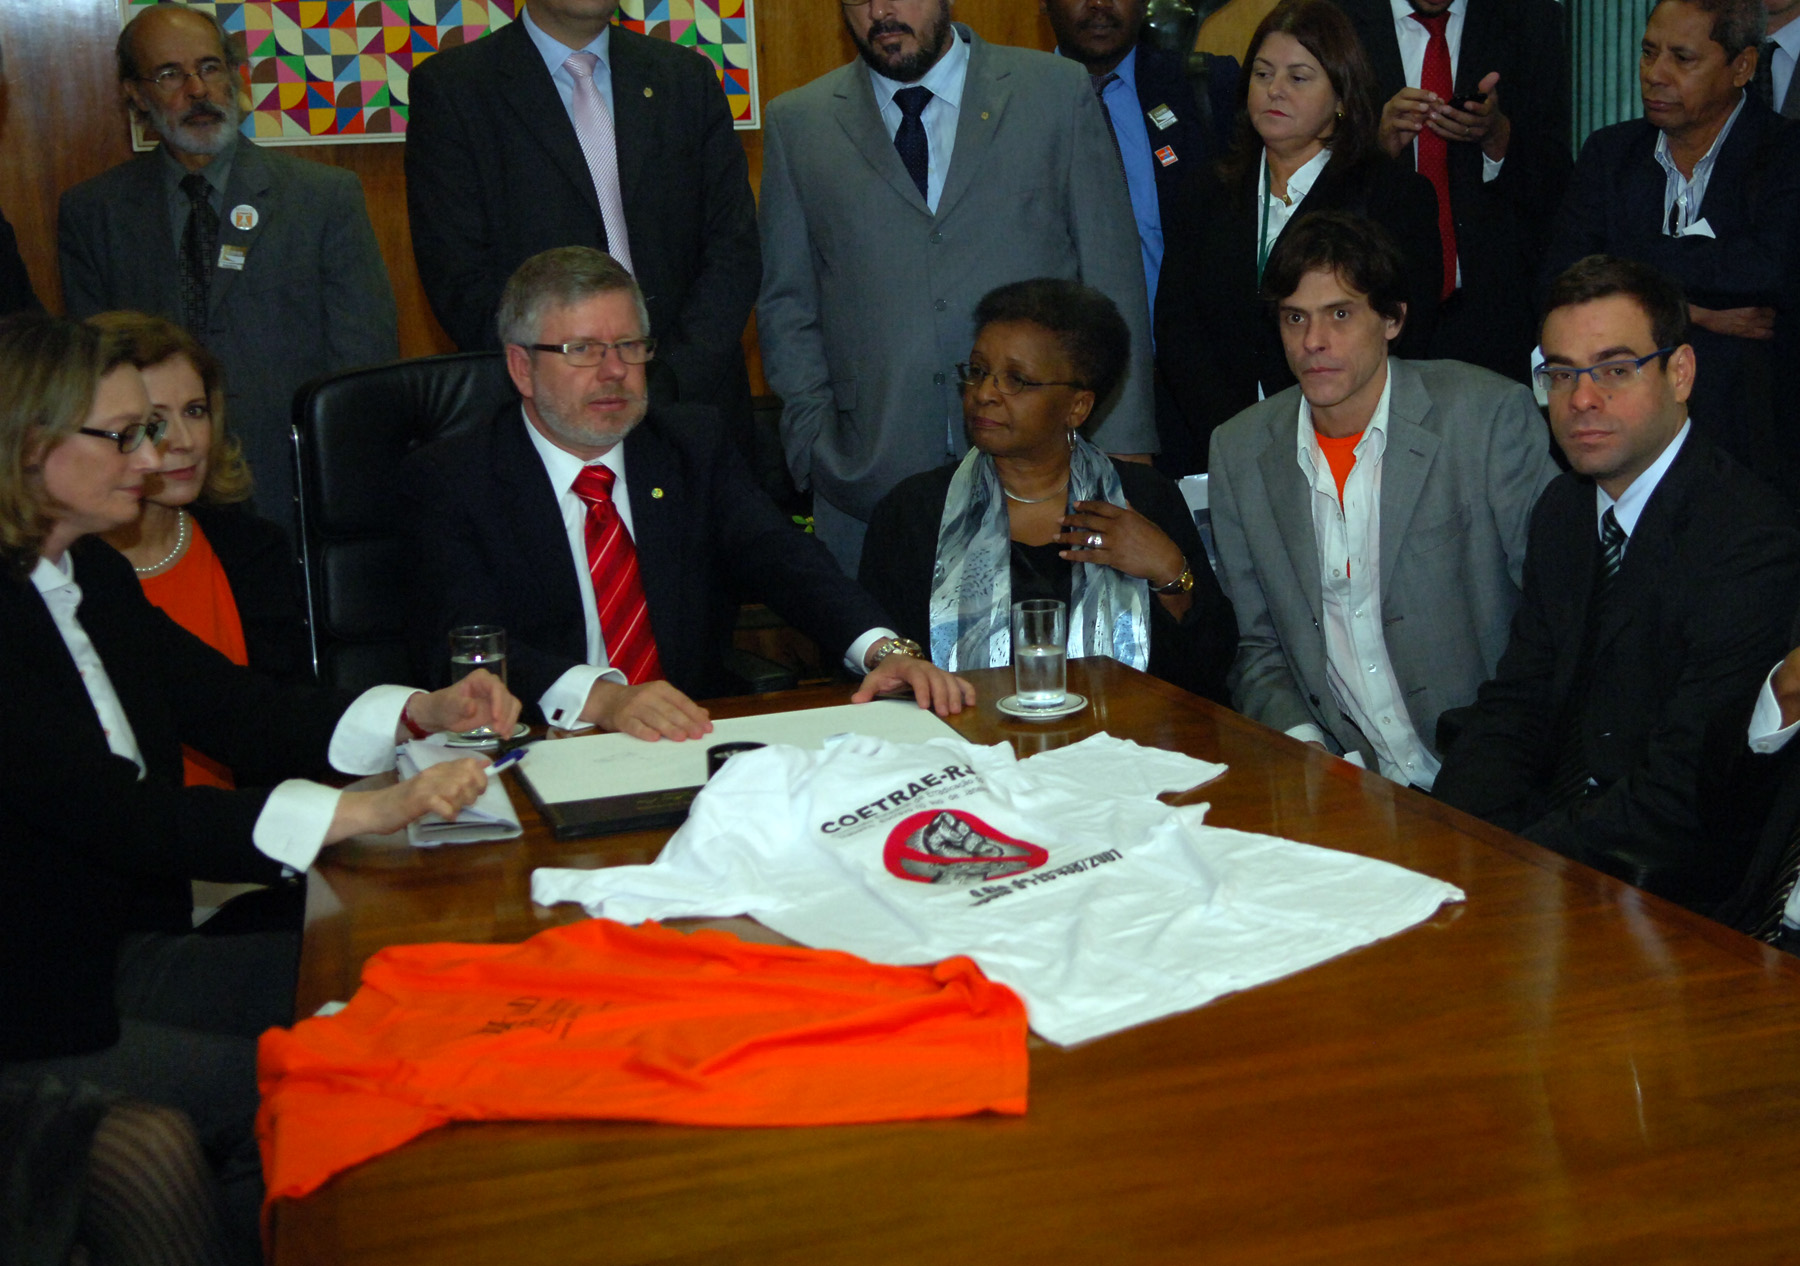 Ministro do trabalho Brizola Neto durante manifesto contra trabalho escravo.